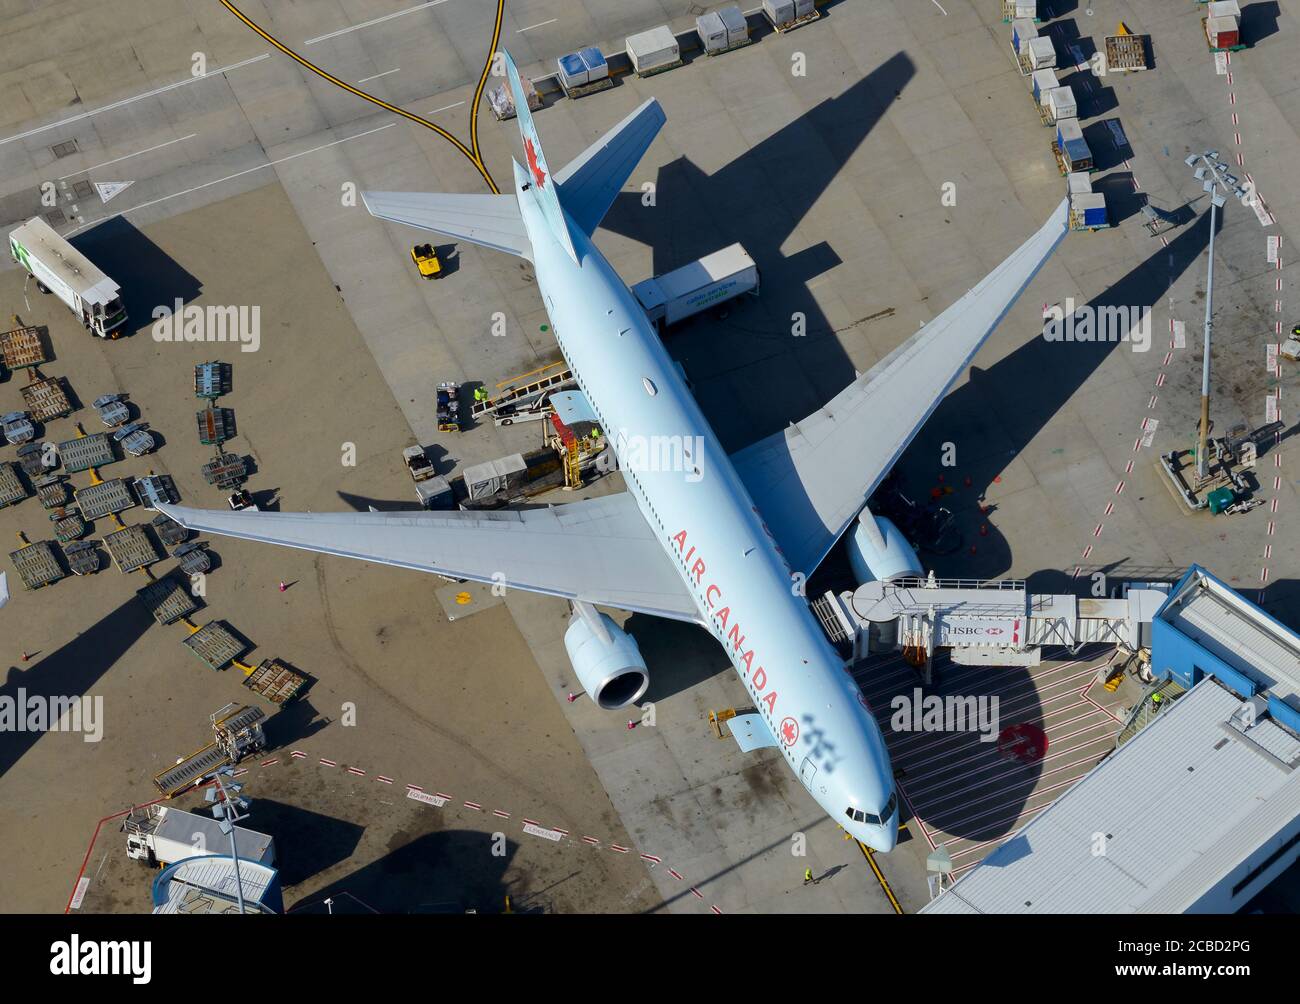 Air Canada Boeing 777 parcheggiato all'aeroporto di Sydney, Australia. Boeing 777-200 in partenza da Vancouver, Canada. C-FIVK. Air Canada vecchia livrea. Foto Stock